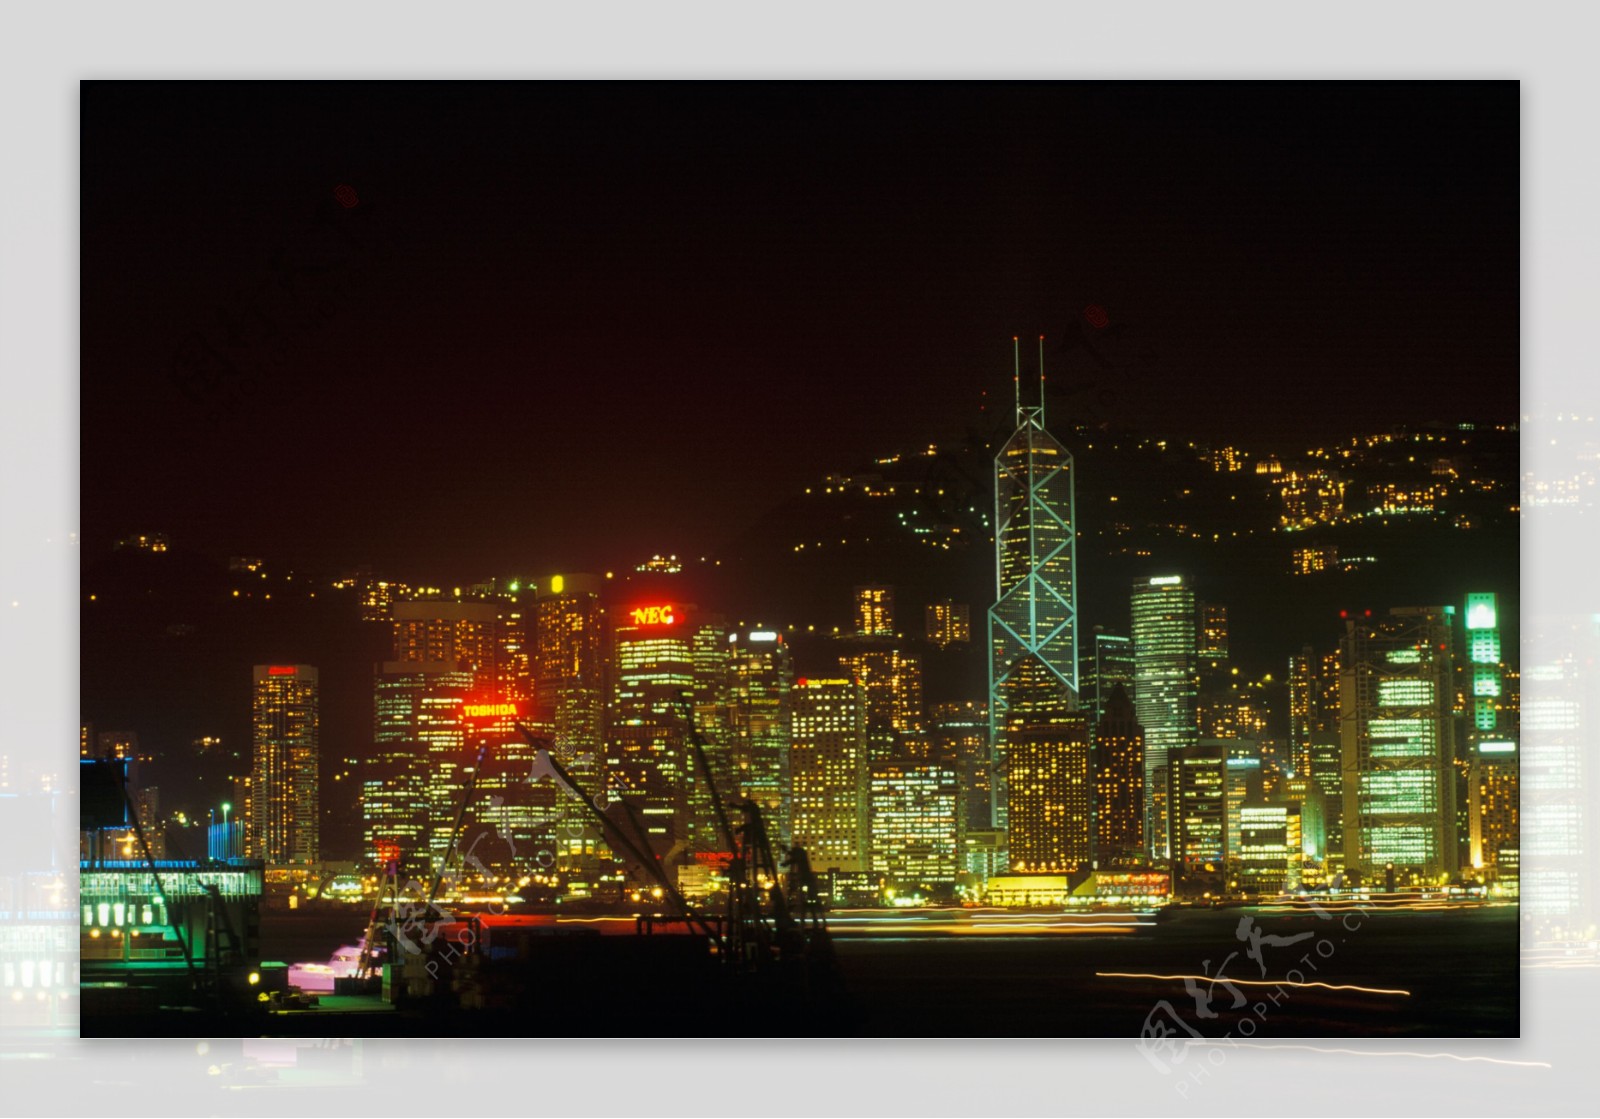 繁华的香港城市夜景图片